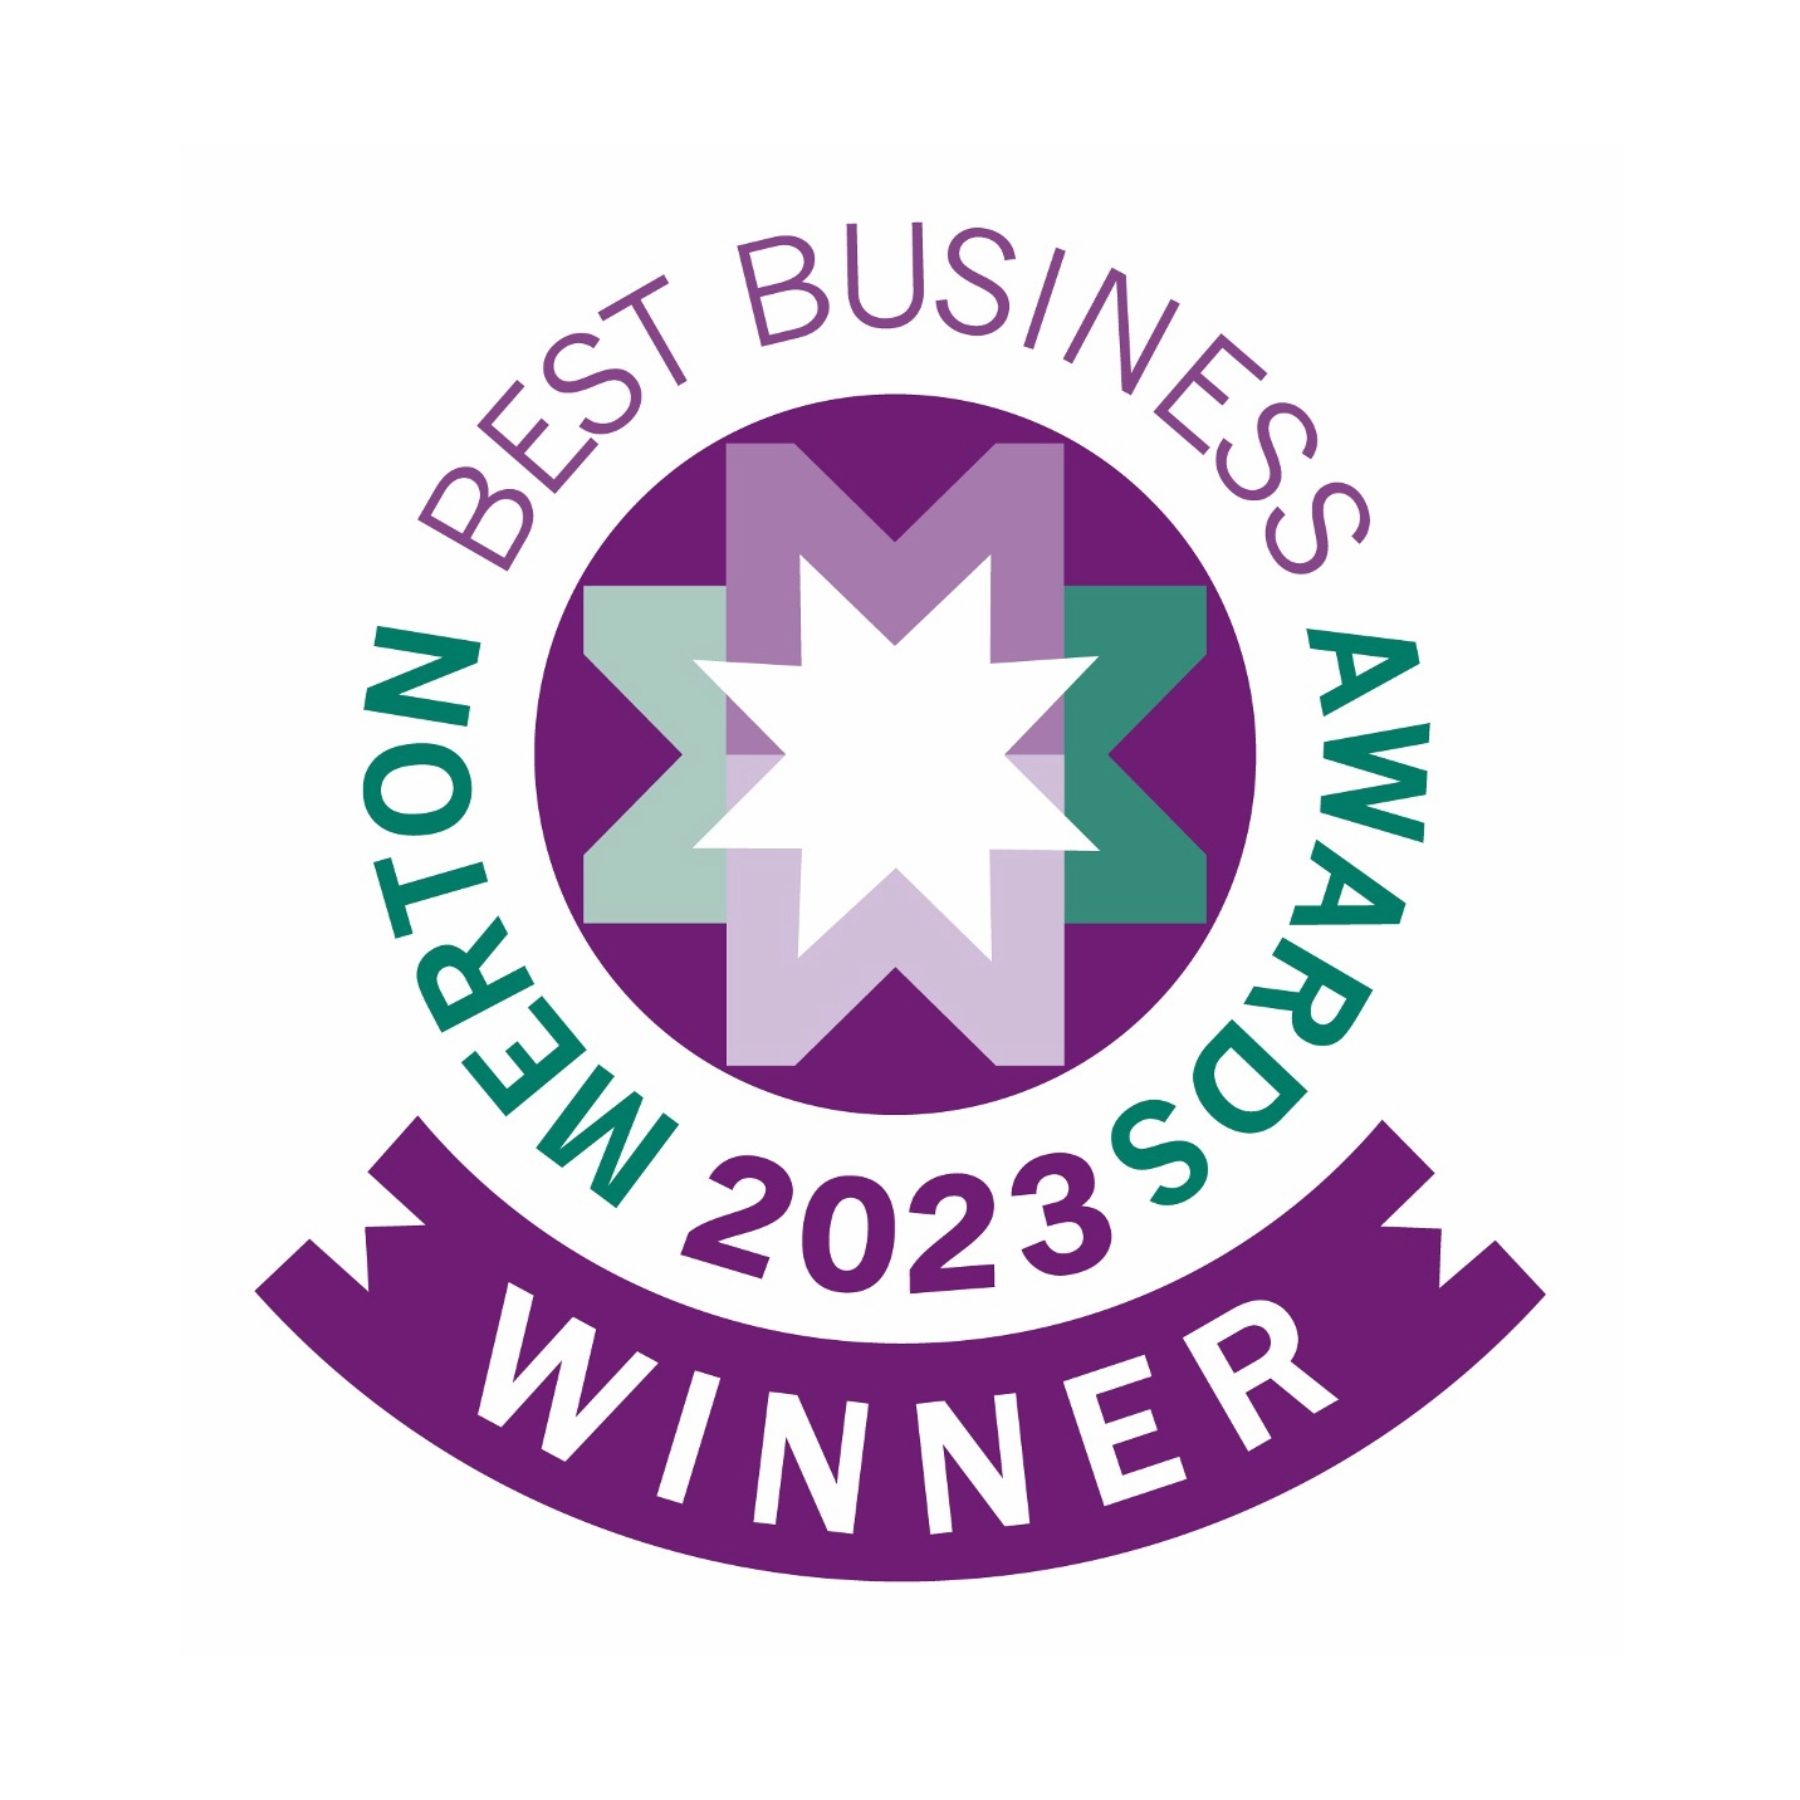 Merton Best Business Awards 2023